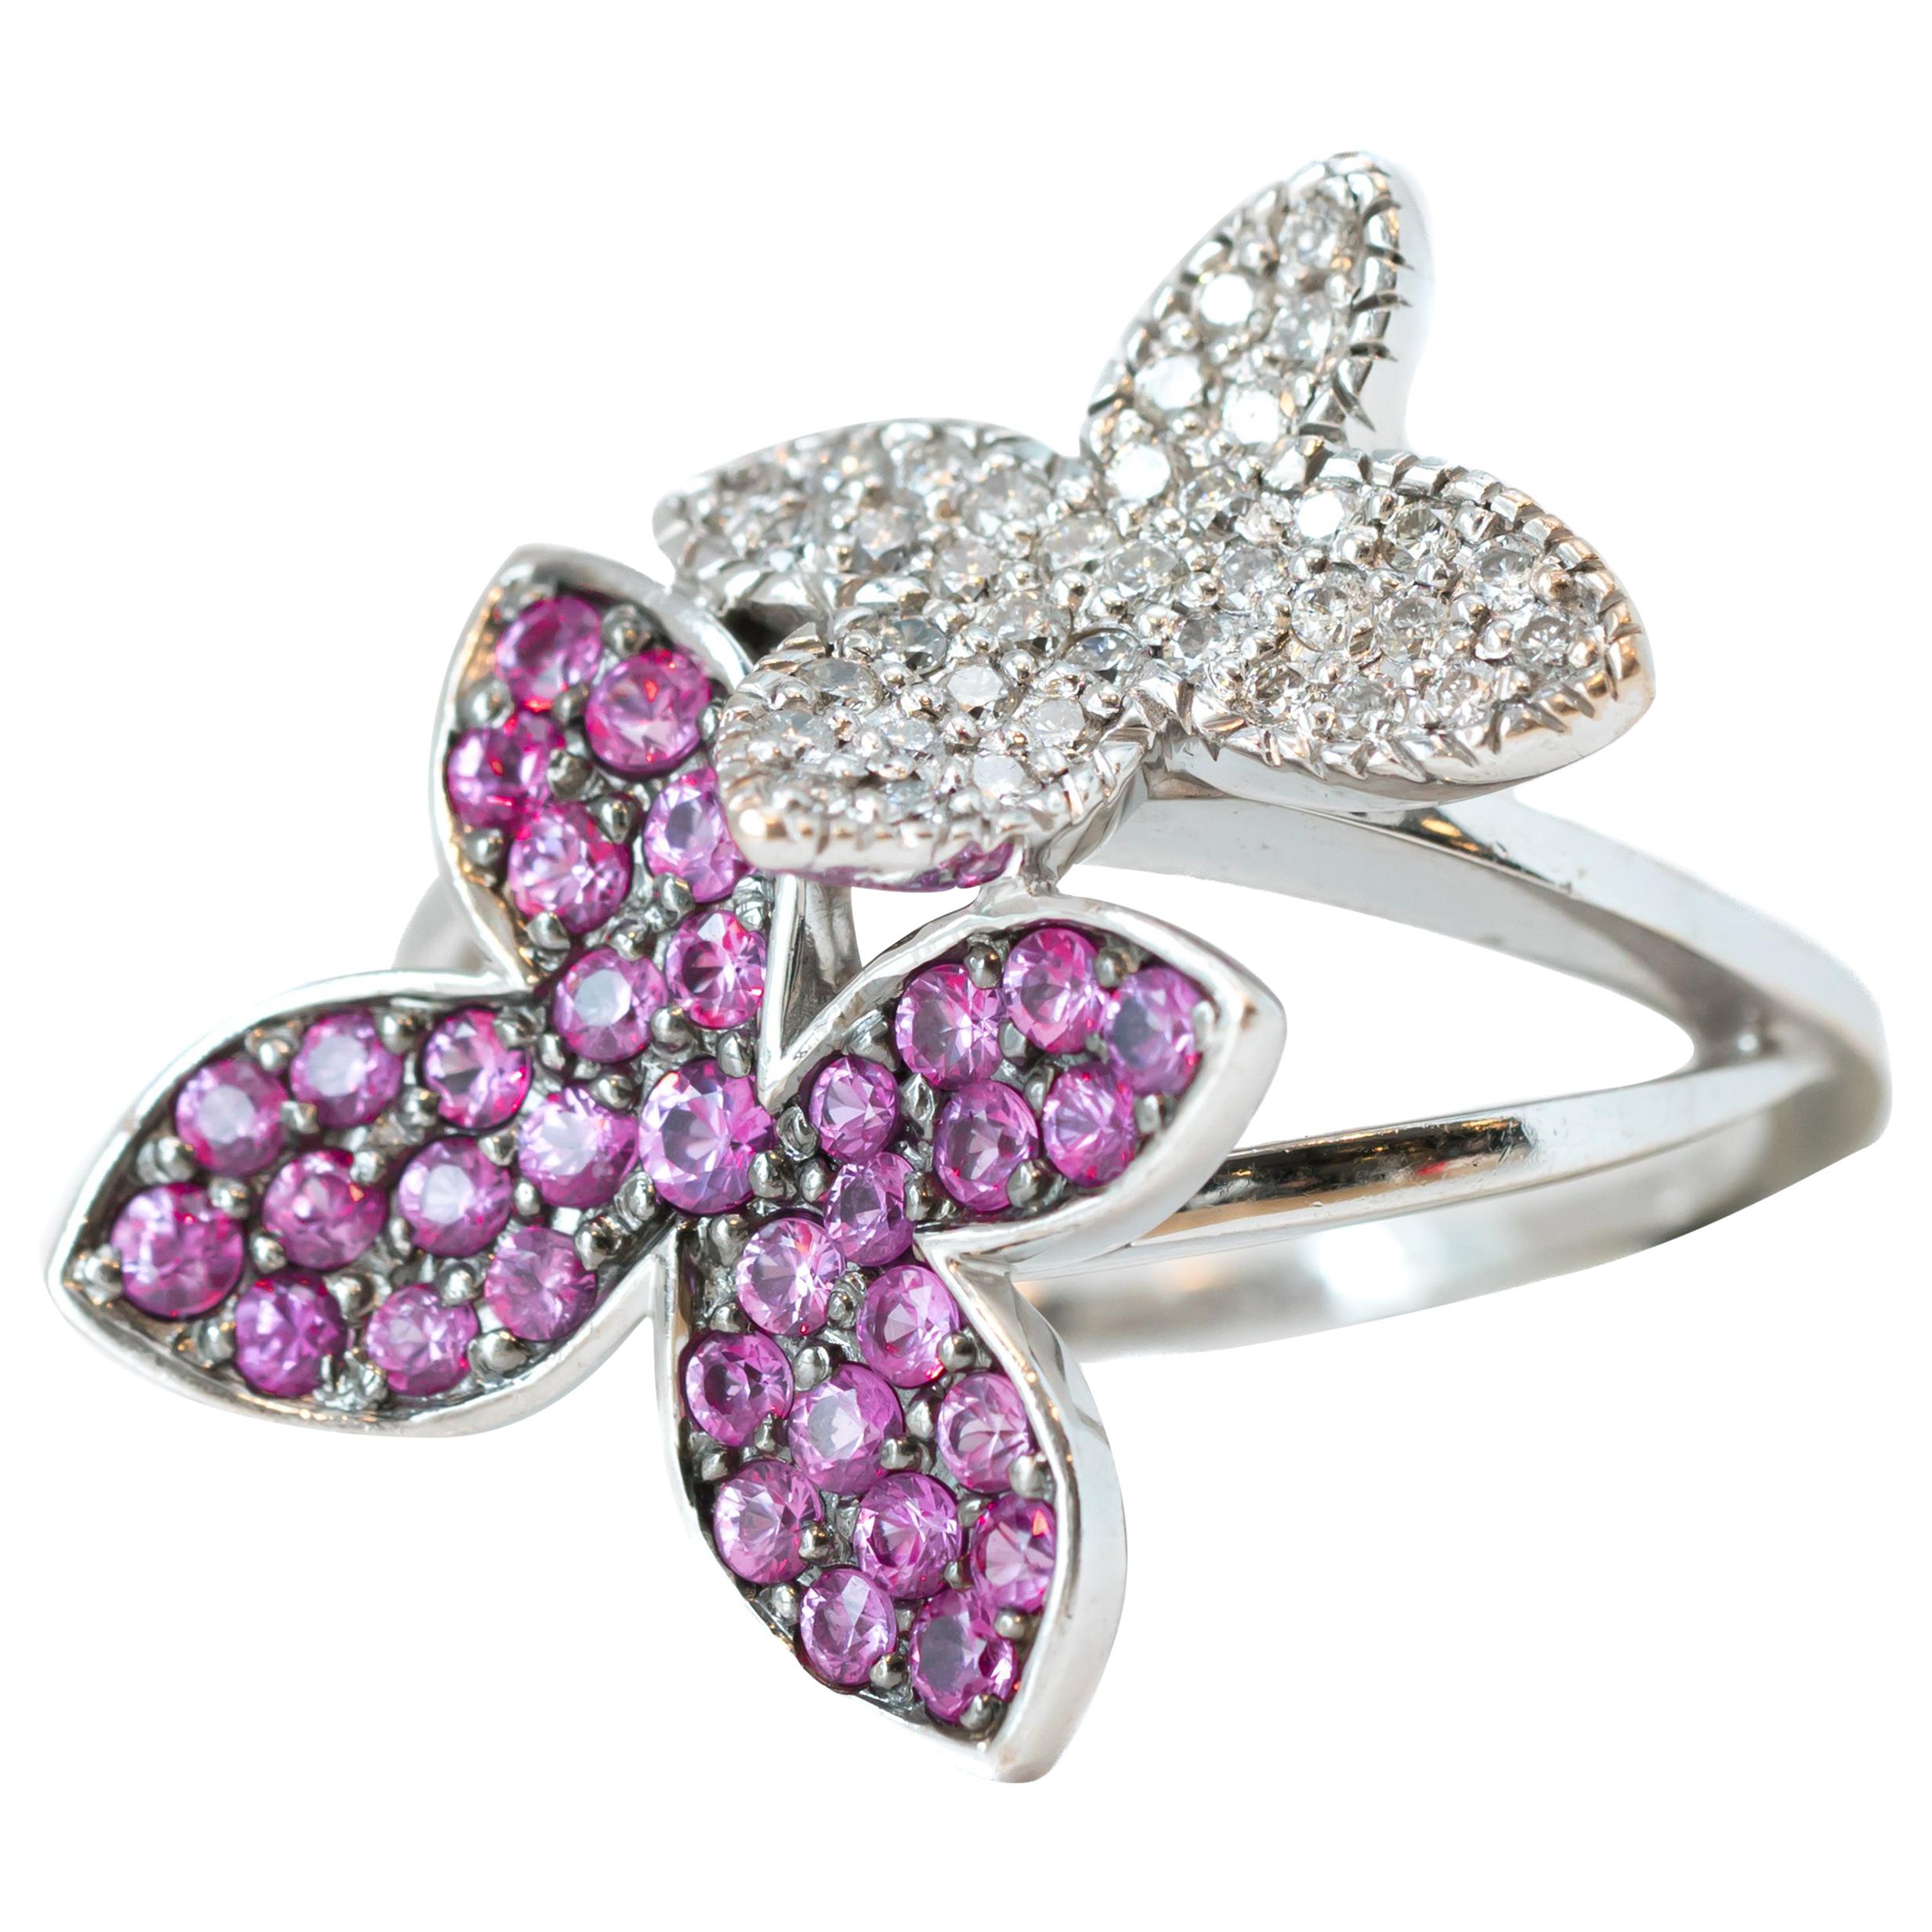 0.25 Carat Diamond and 0.25 Carat Pink Sapphire 14 Karat White Gold Floral Ring